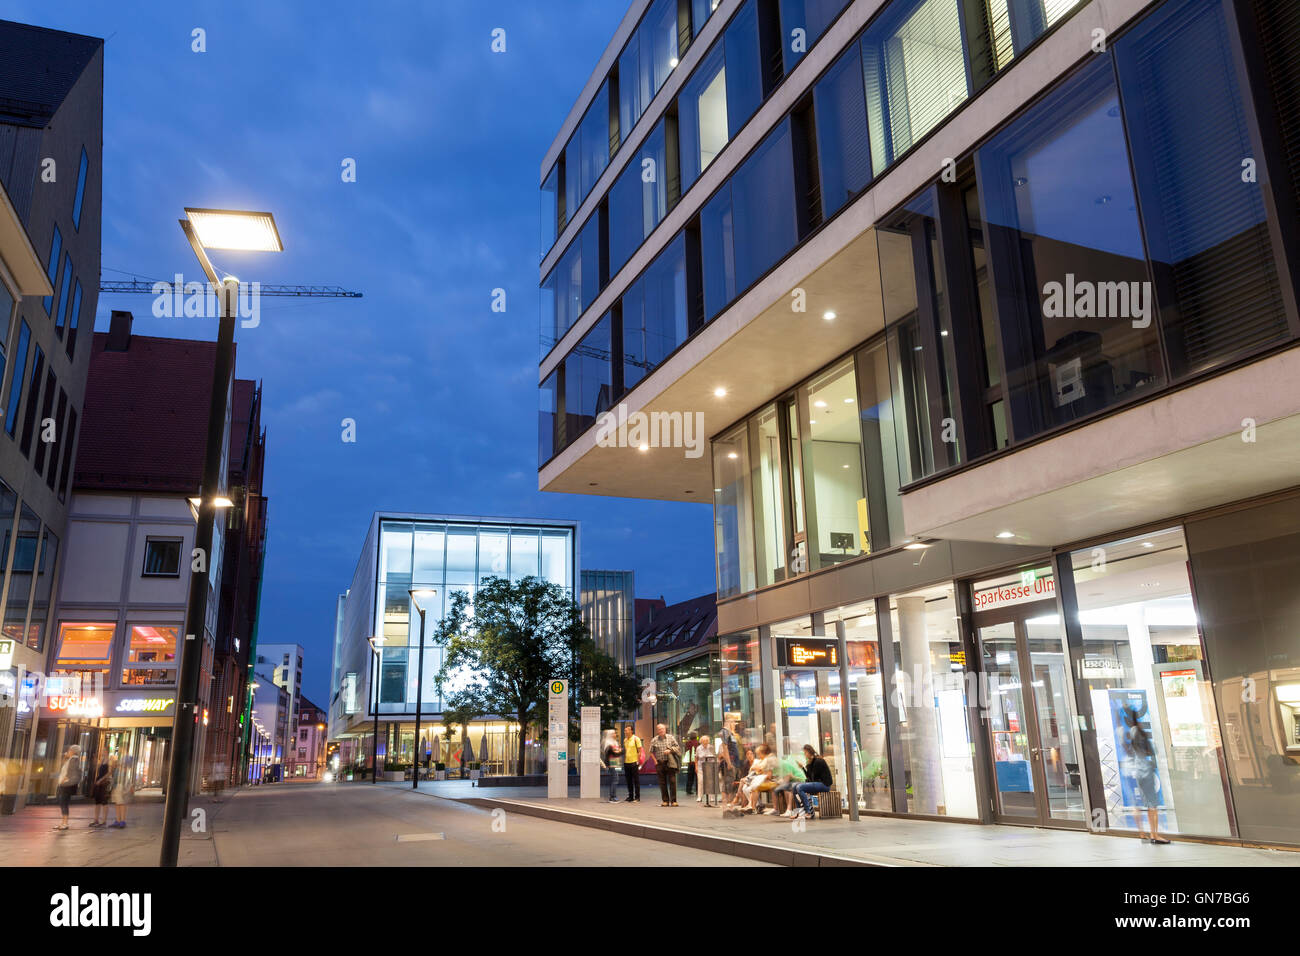 Street in Ulm illuminated at night, Germany Stock Photo